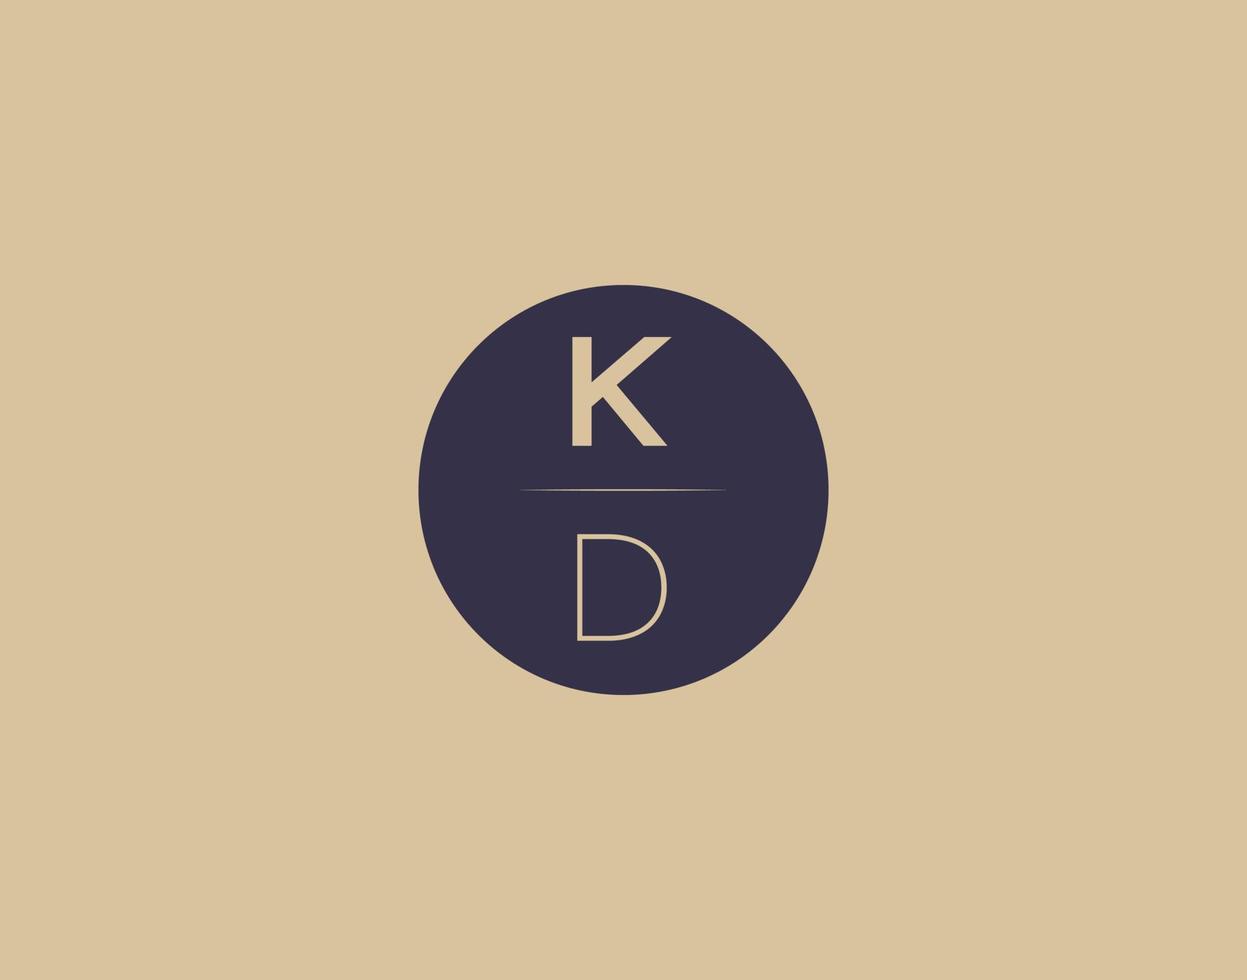 kd brief modern elegant logo ontwerp vector afbeeldingen